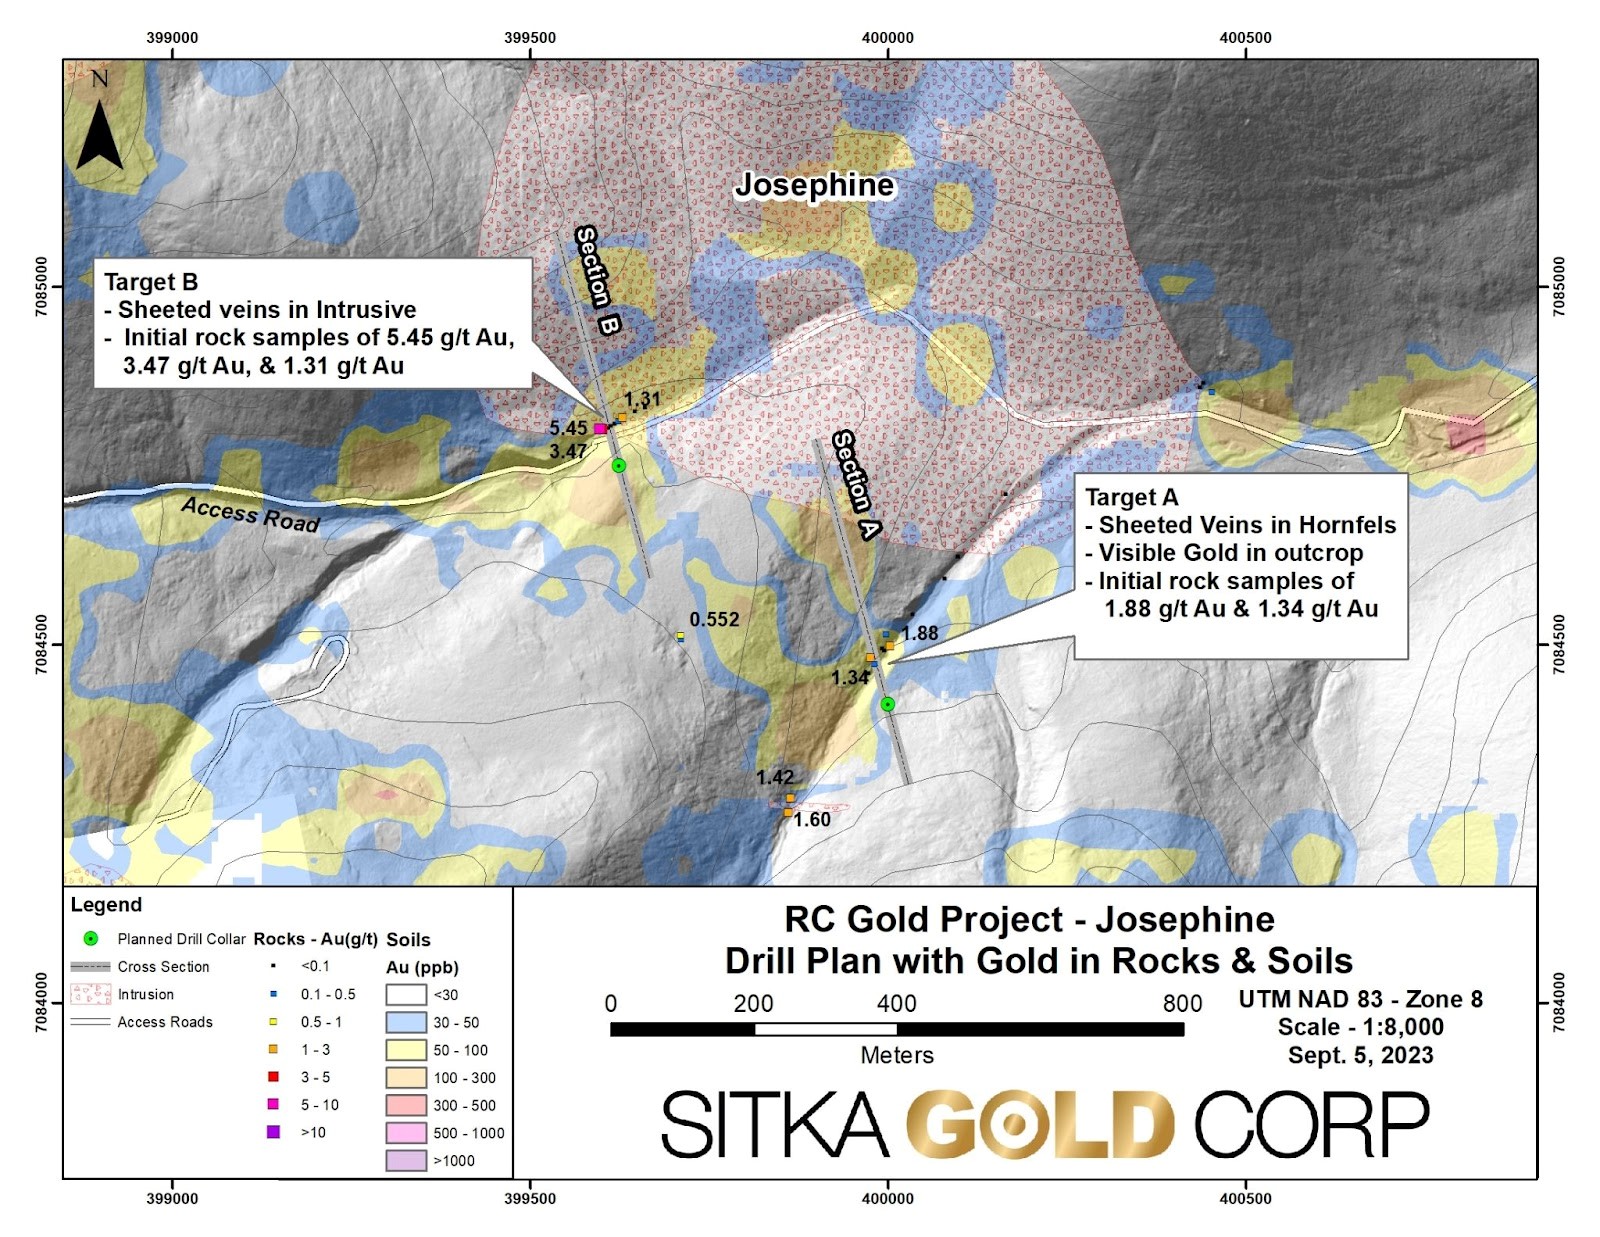 Sitka Gold wagt zwei Step-Out-Bohrungen auf neuer Josephine-Intrusion des RC Goldprojekts